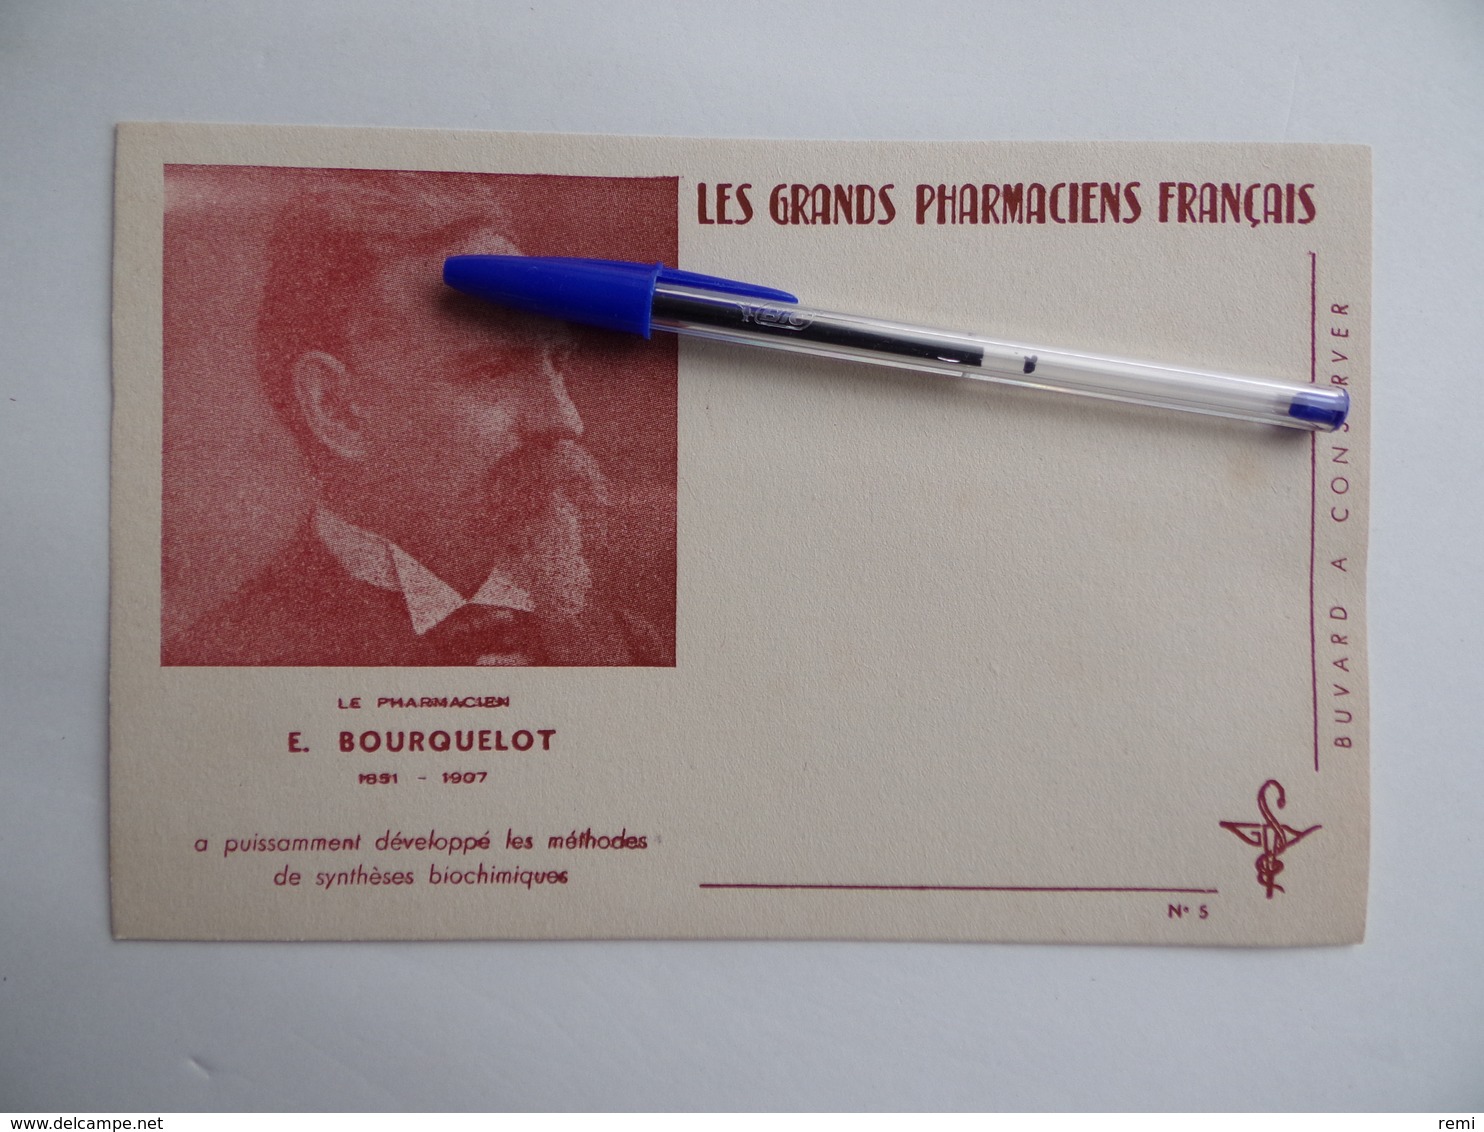 BUVARD Les GRANDS PHARMACIENS FRANCAIS E.BOURQUELOT 1891 1907 Pharmacie Pharmacien - Produits Pharmaceutiques